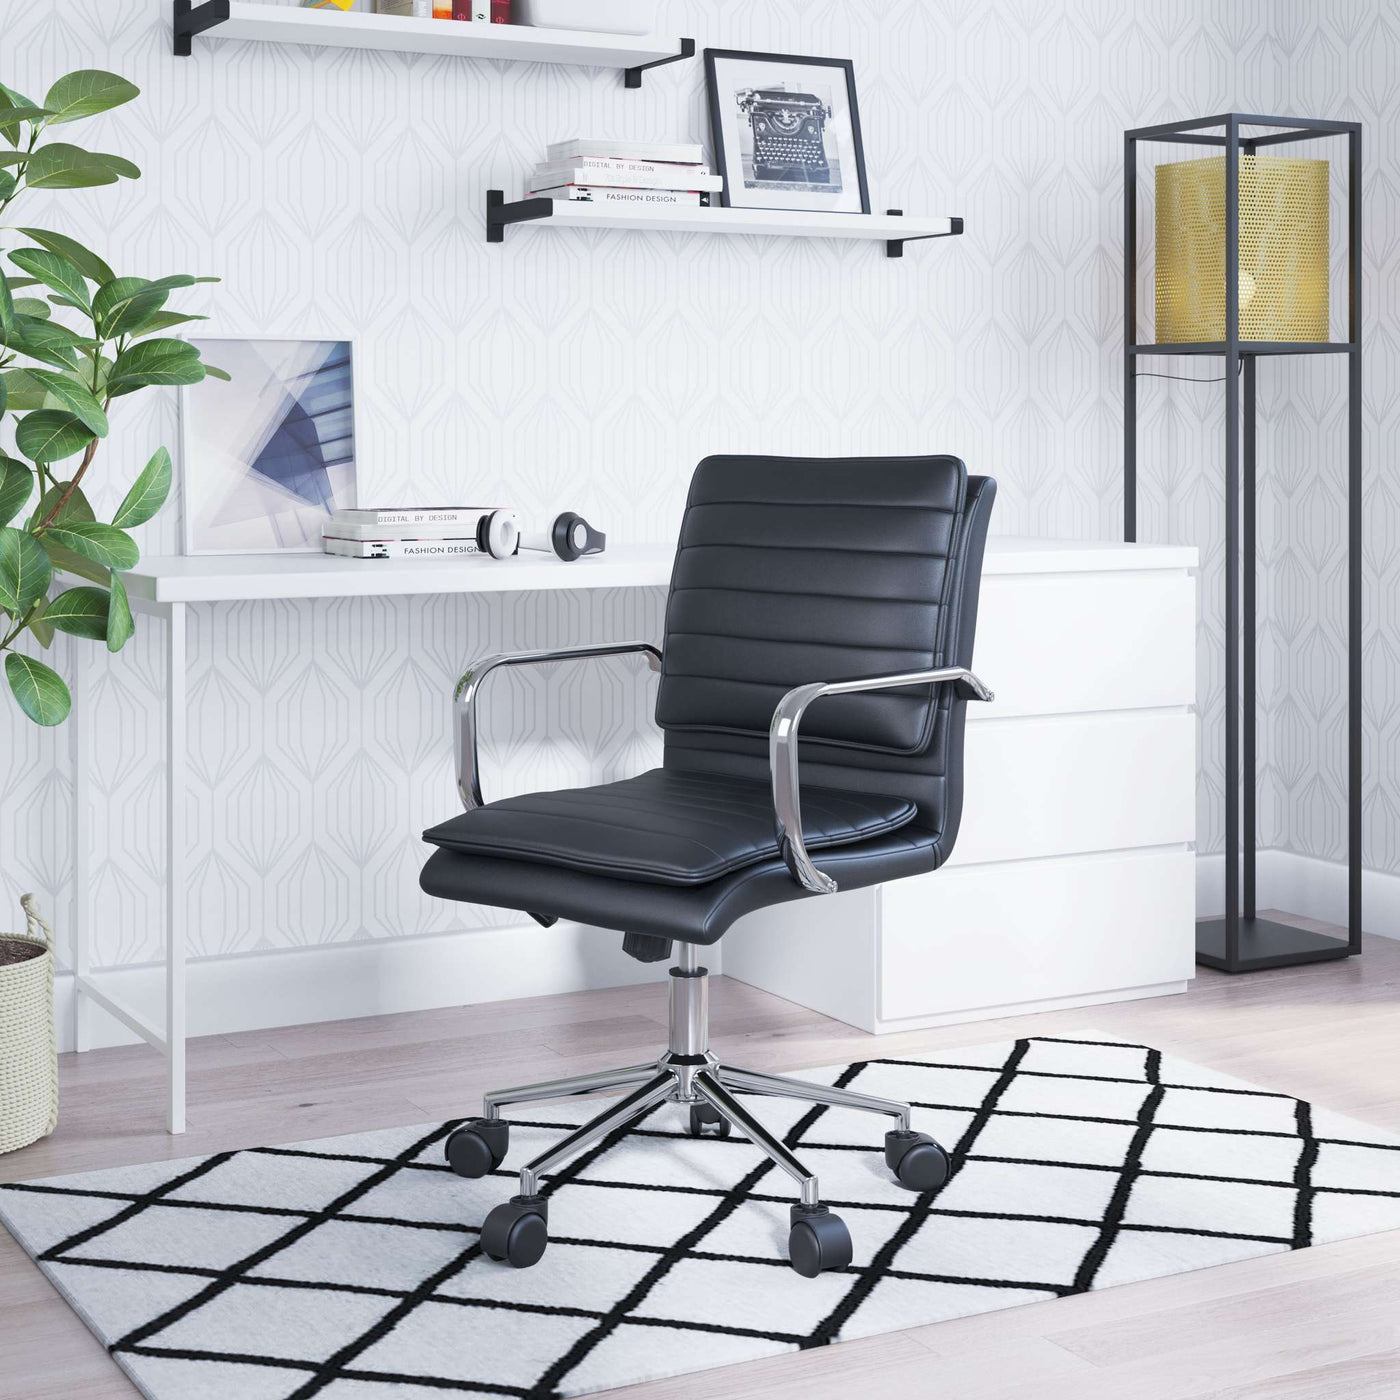 Zuo Mod Partner Office Chair